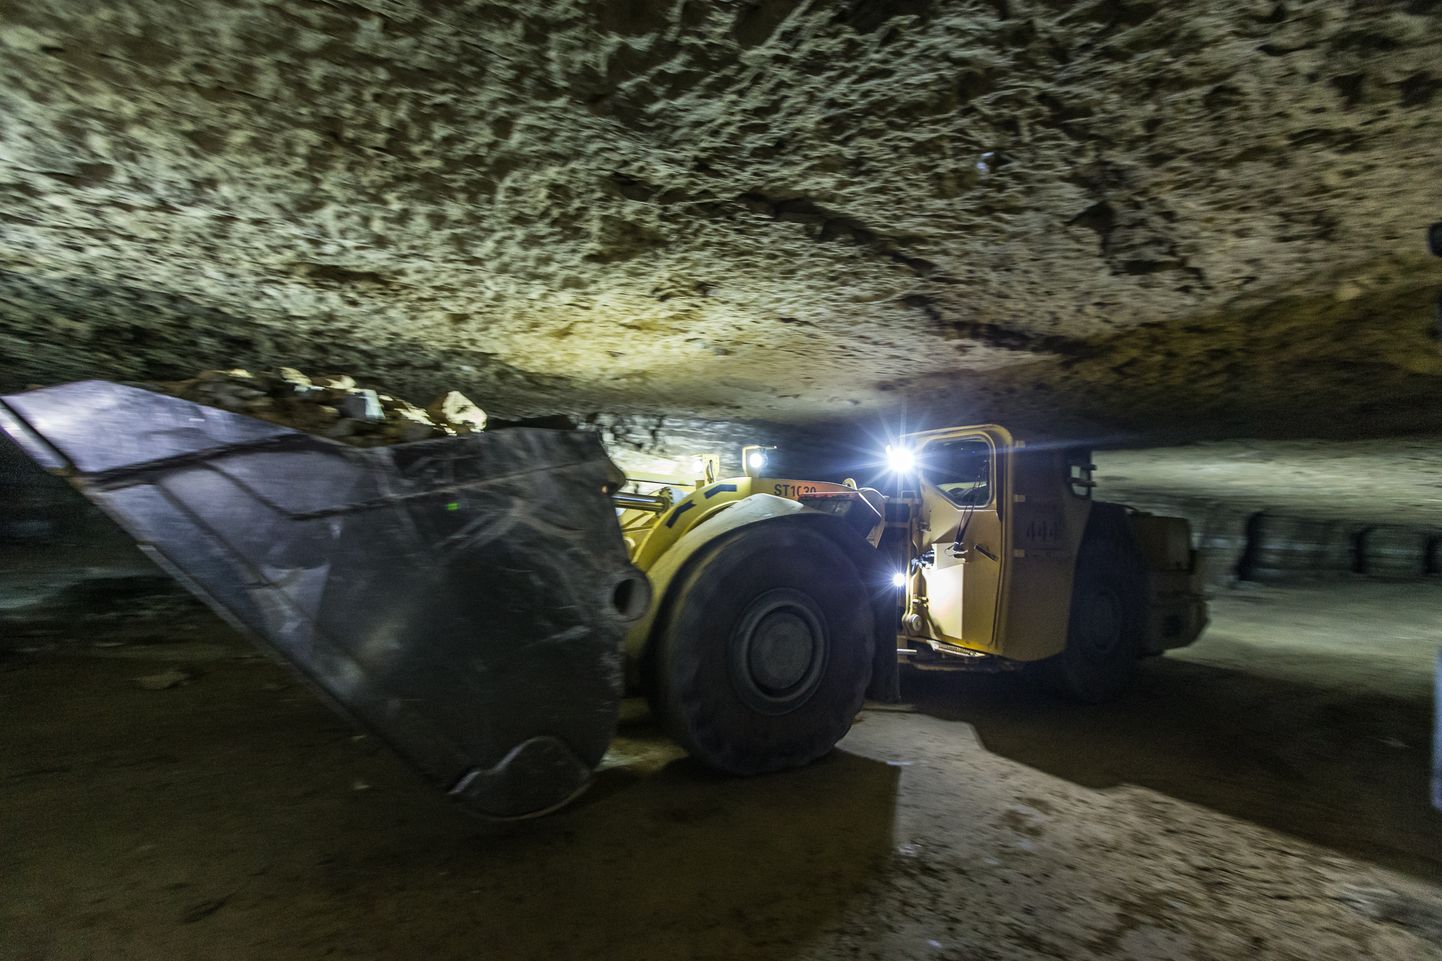 Estonia kaevanduses on tehnika liiklus väga intensiivne, mistõttu kehtivad seal oma liiklusreeglid, samuti nagu maapealses liikluses.